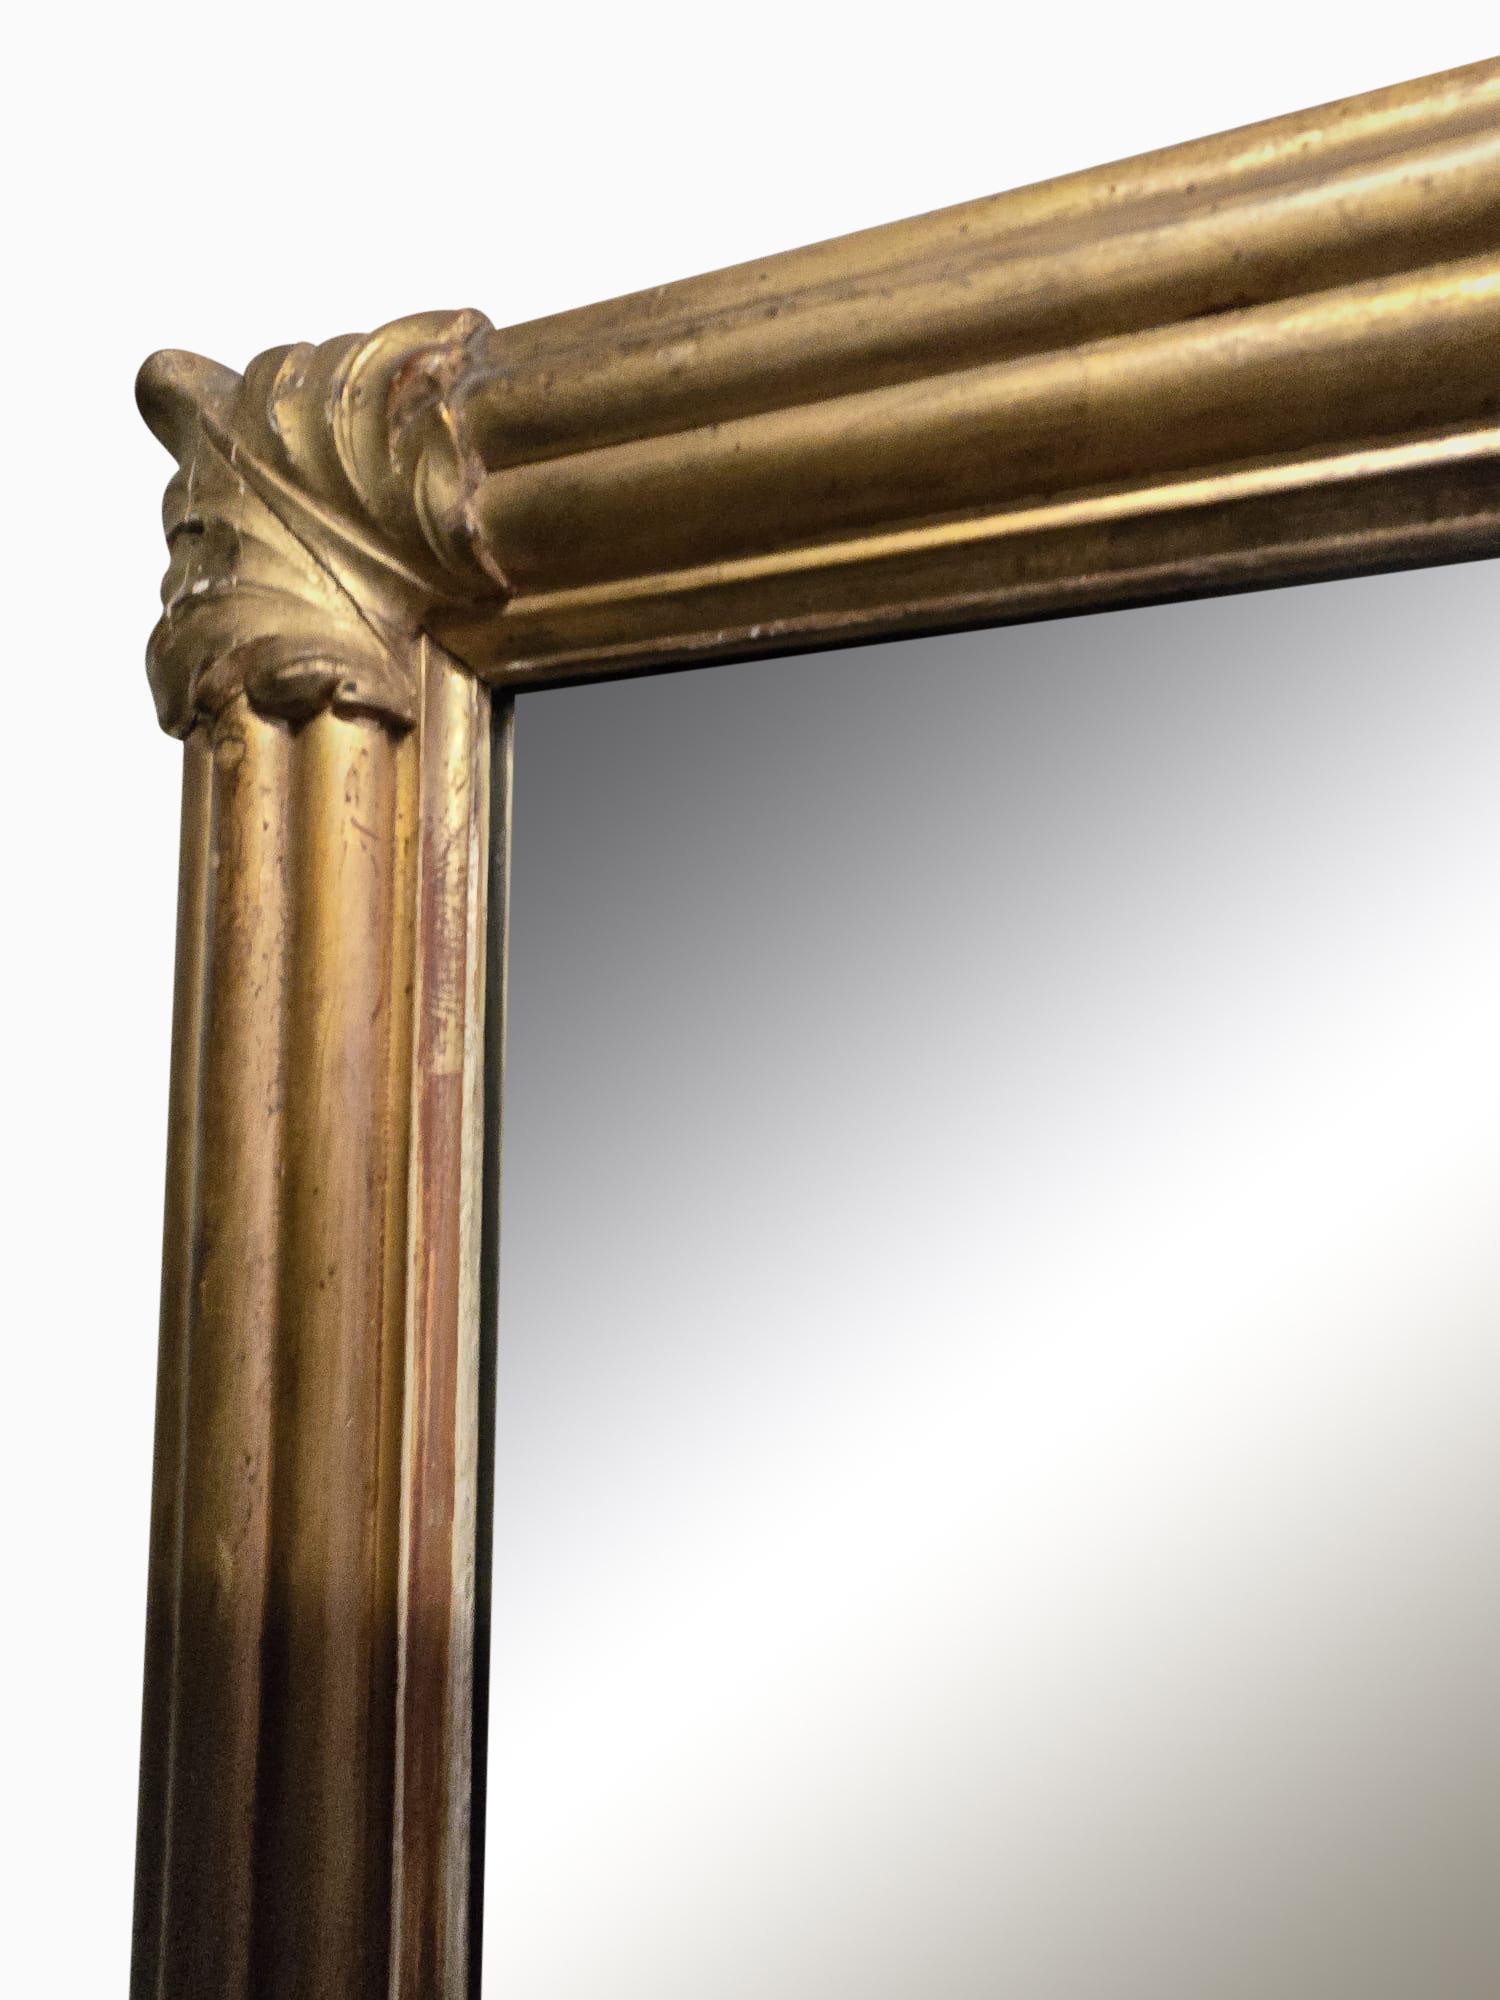 Monumentale französische Spiegel aus goldenem Holz - Historische Schätze der Eleganz
Versetzen Sie sich in die Grandeur des 19. Jahrhunderts mit unseren monumentalen französischen Spiegeln aus vergoldetem Holz. Mit einer beeindruckenden Größe von